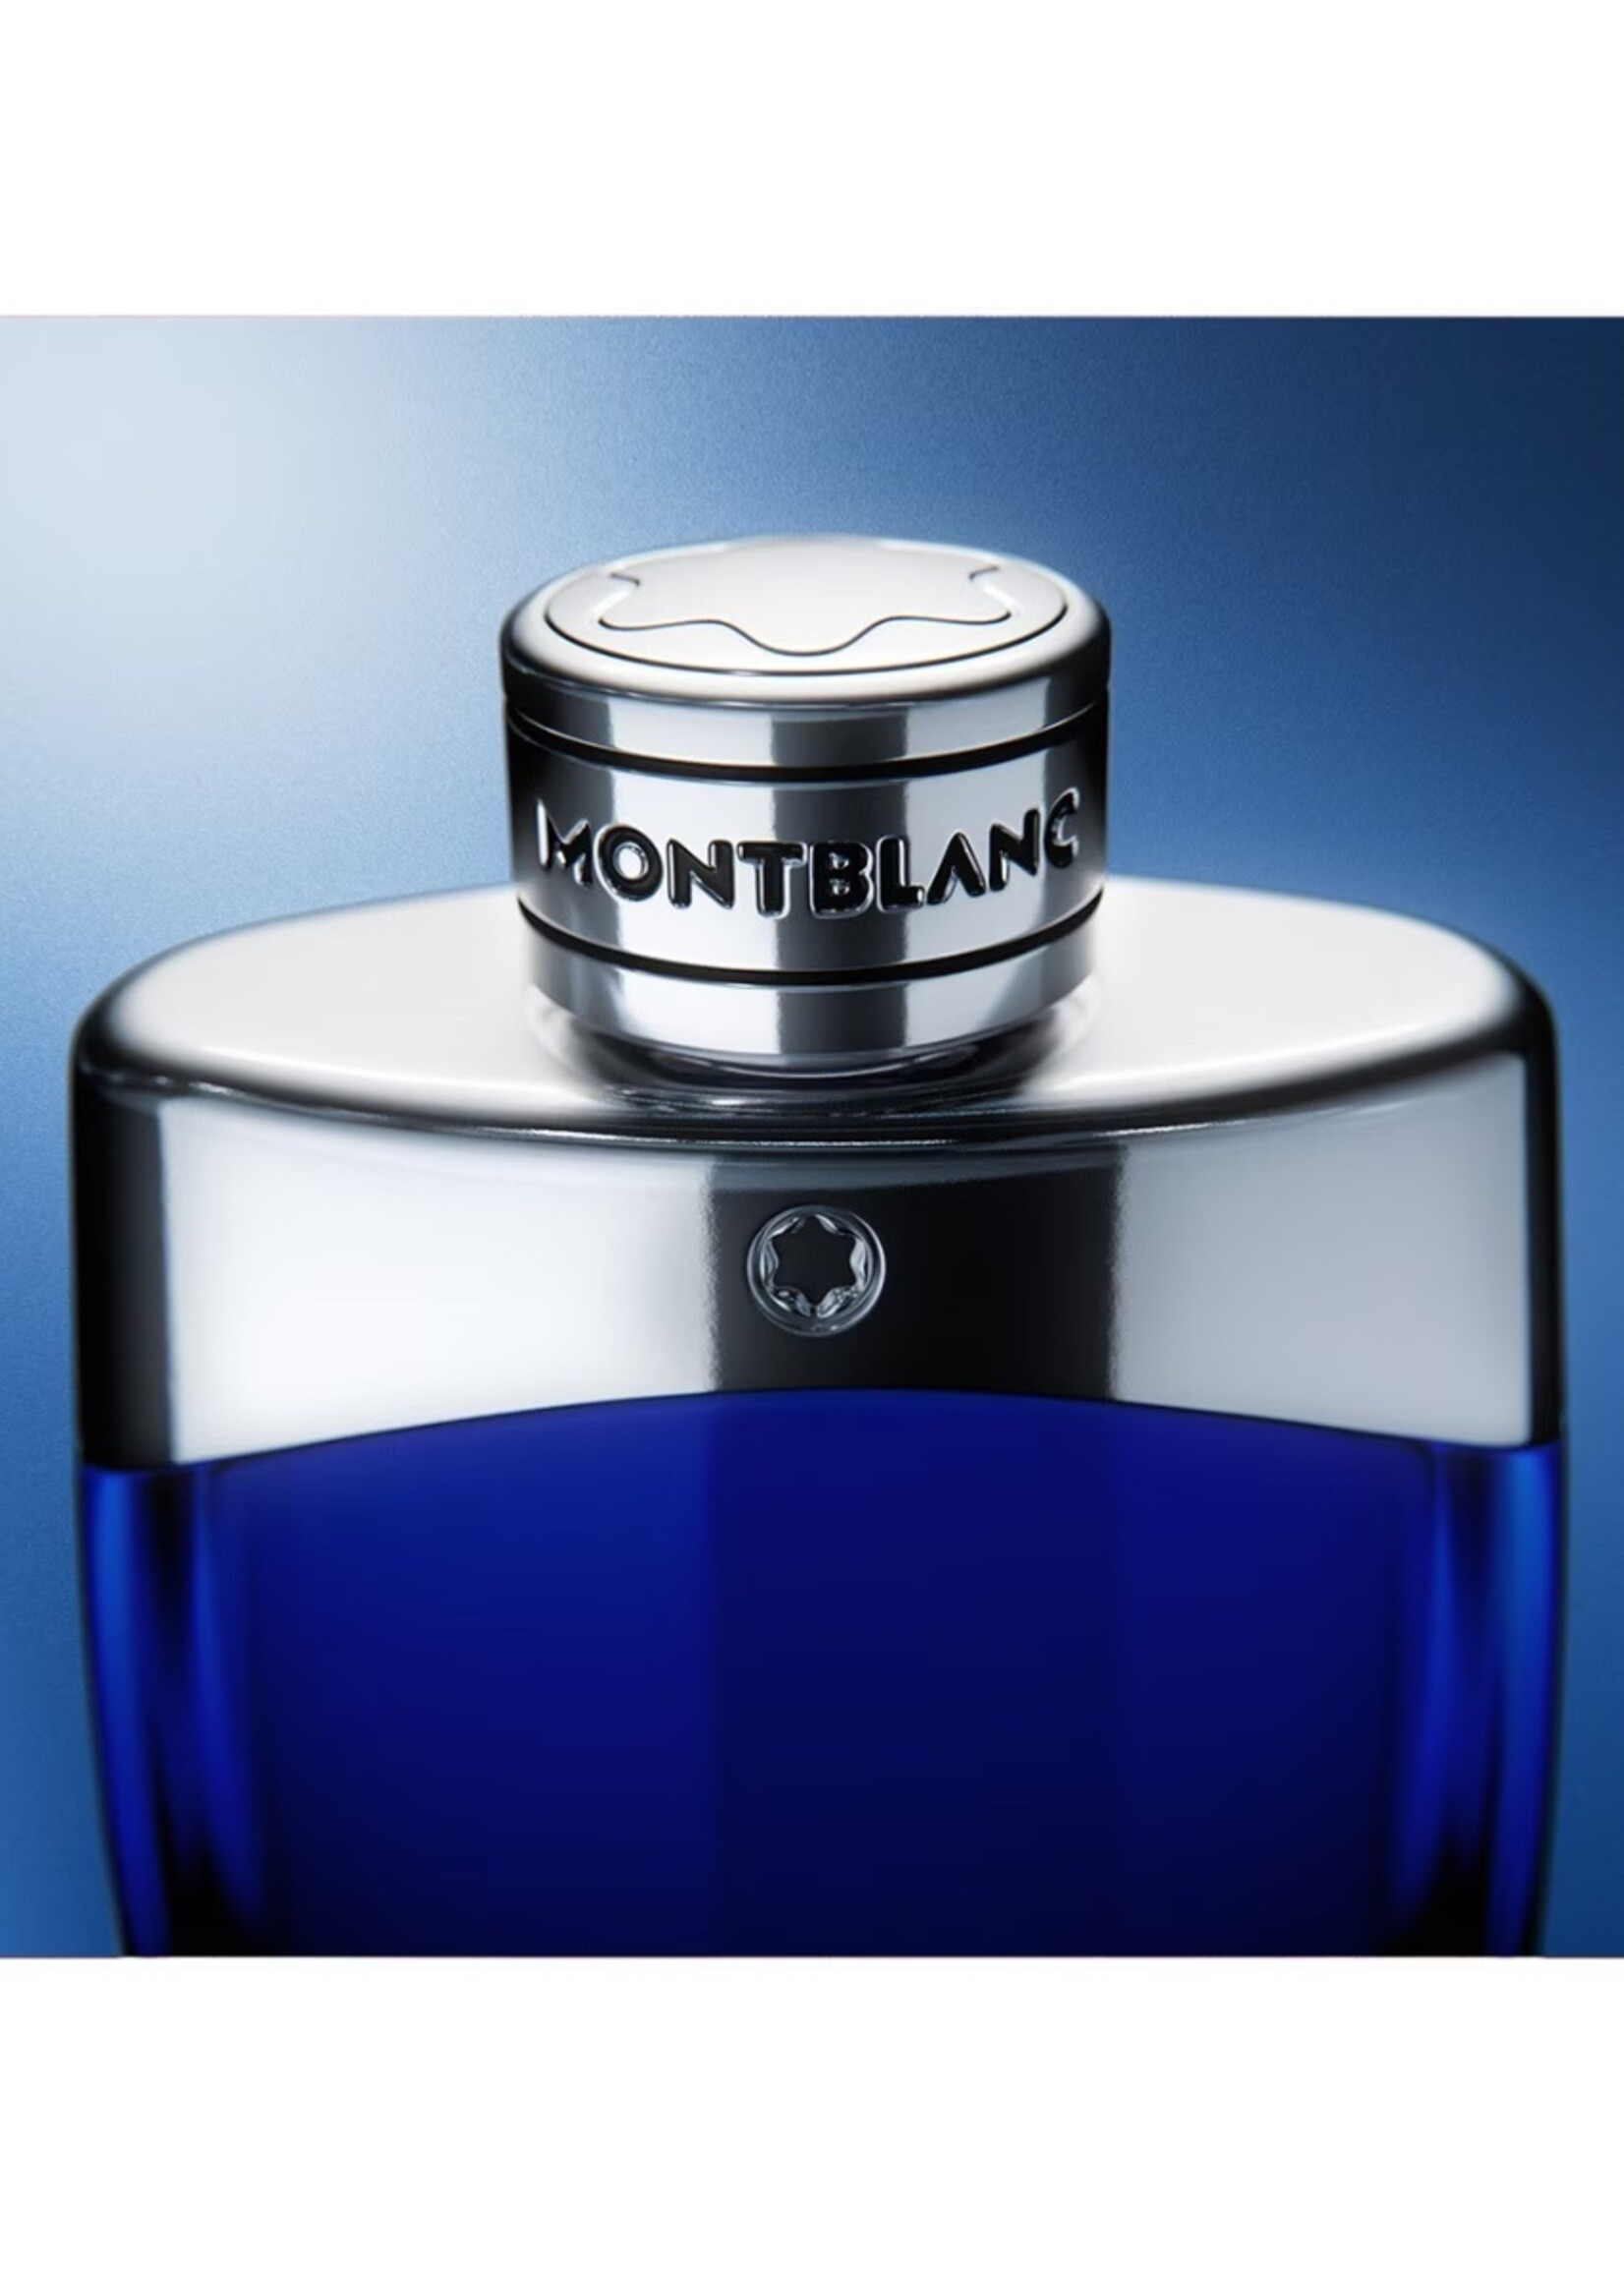 MONTBLANC Legend Blue Eau de Parfum 30ml